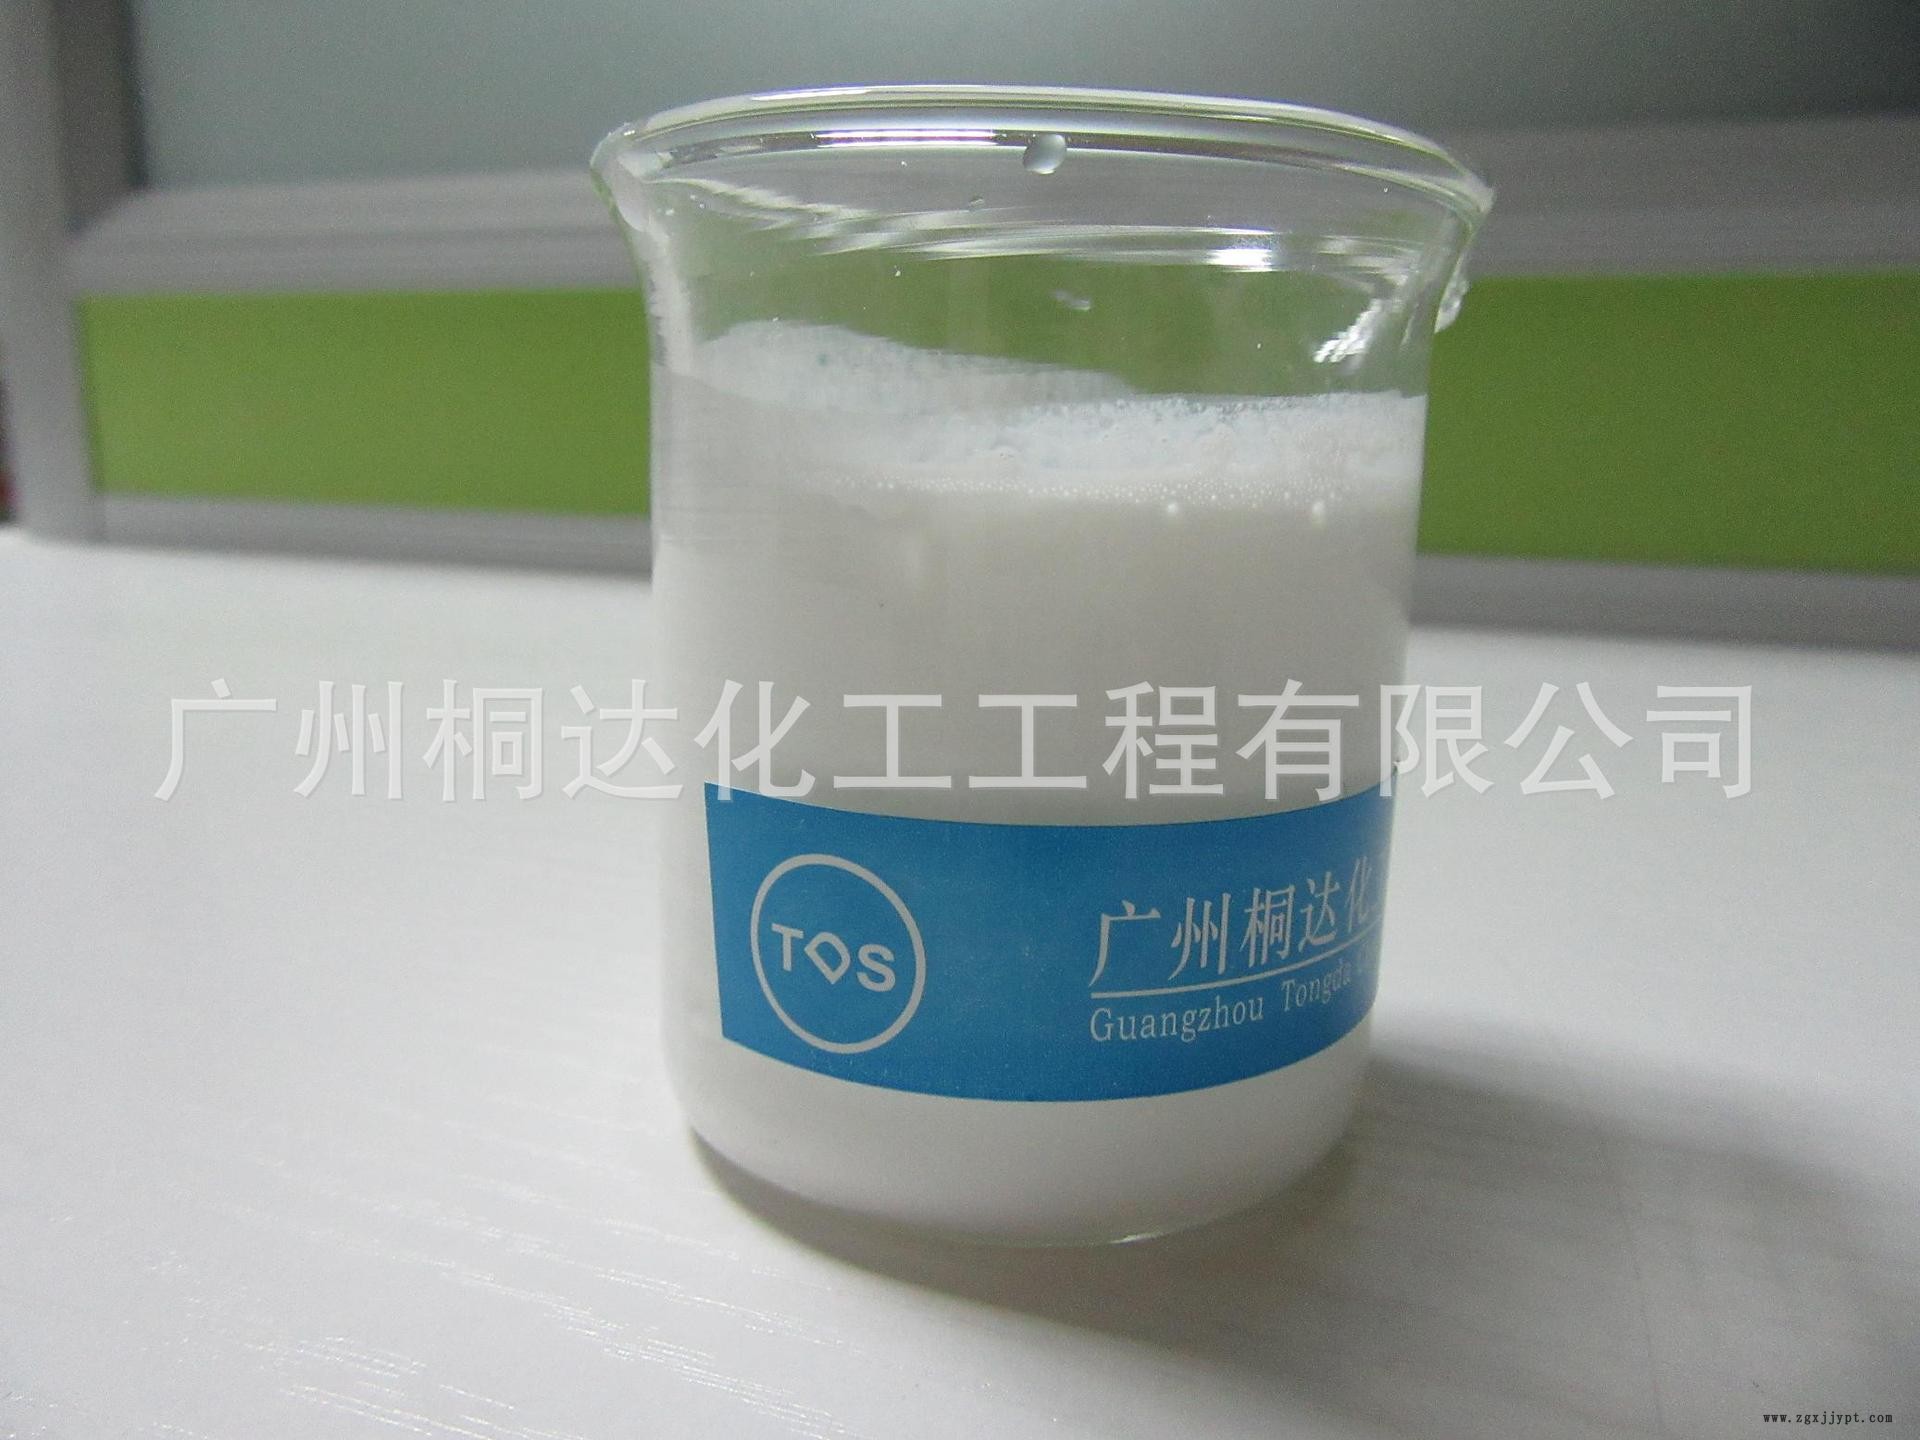 RRJ-211 柔软剂、织物超蓬松柔软剂 适用于纯棉、涤纶、涤棉等示例图4